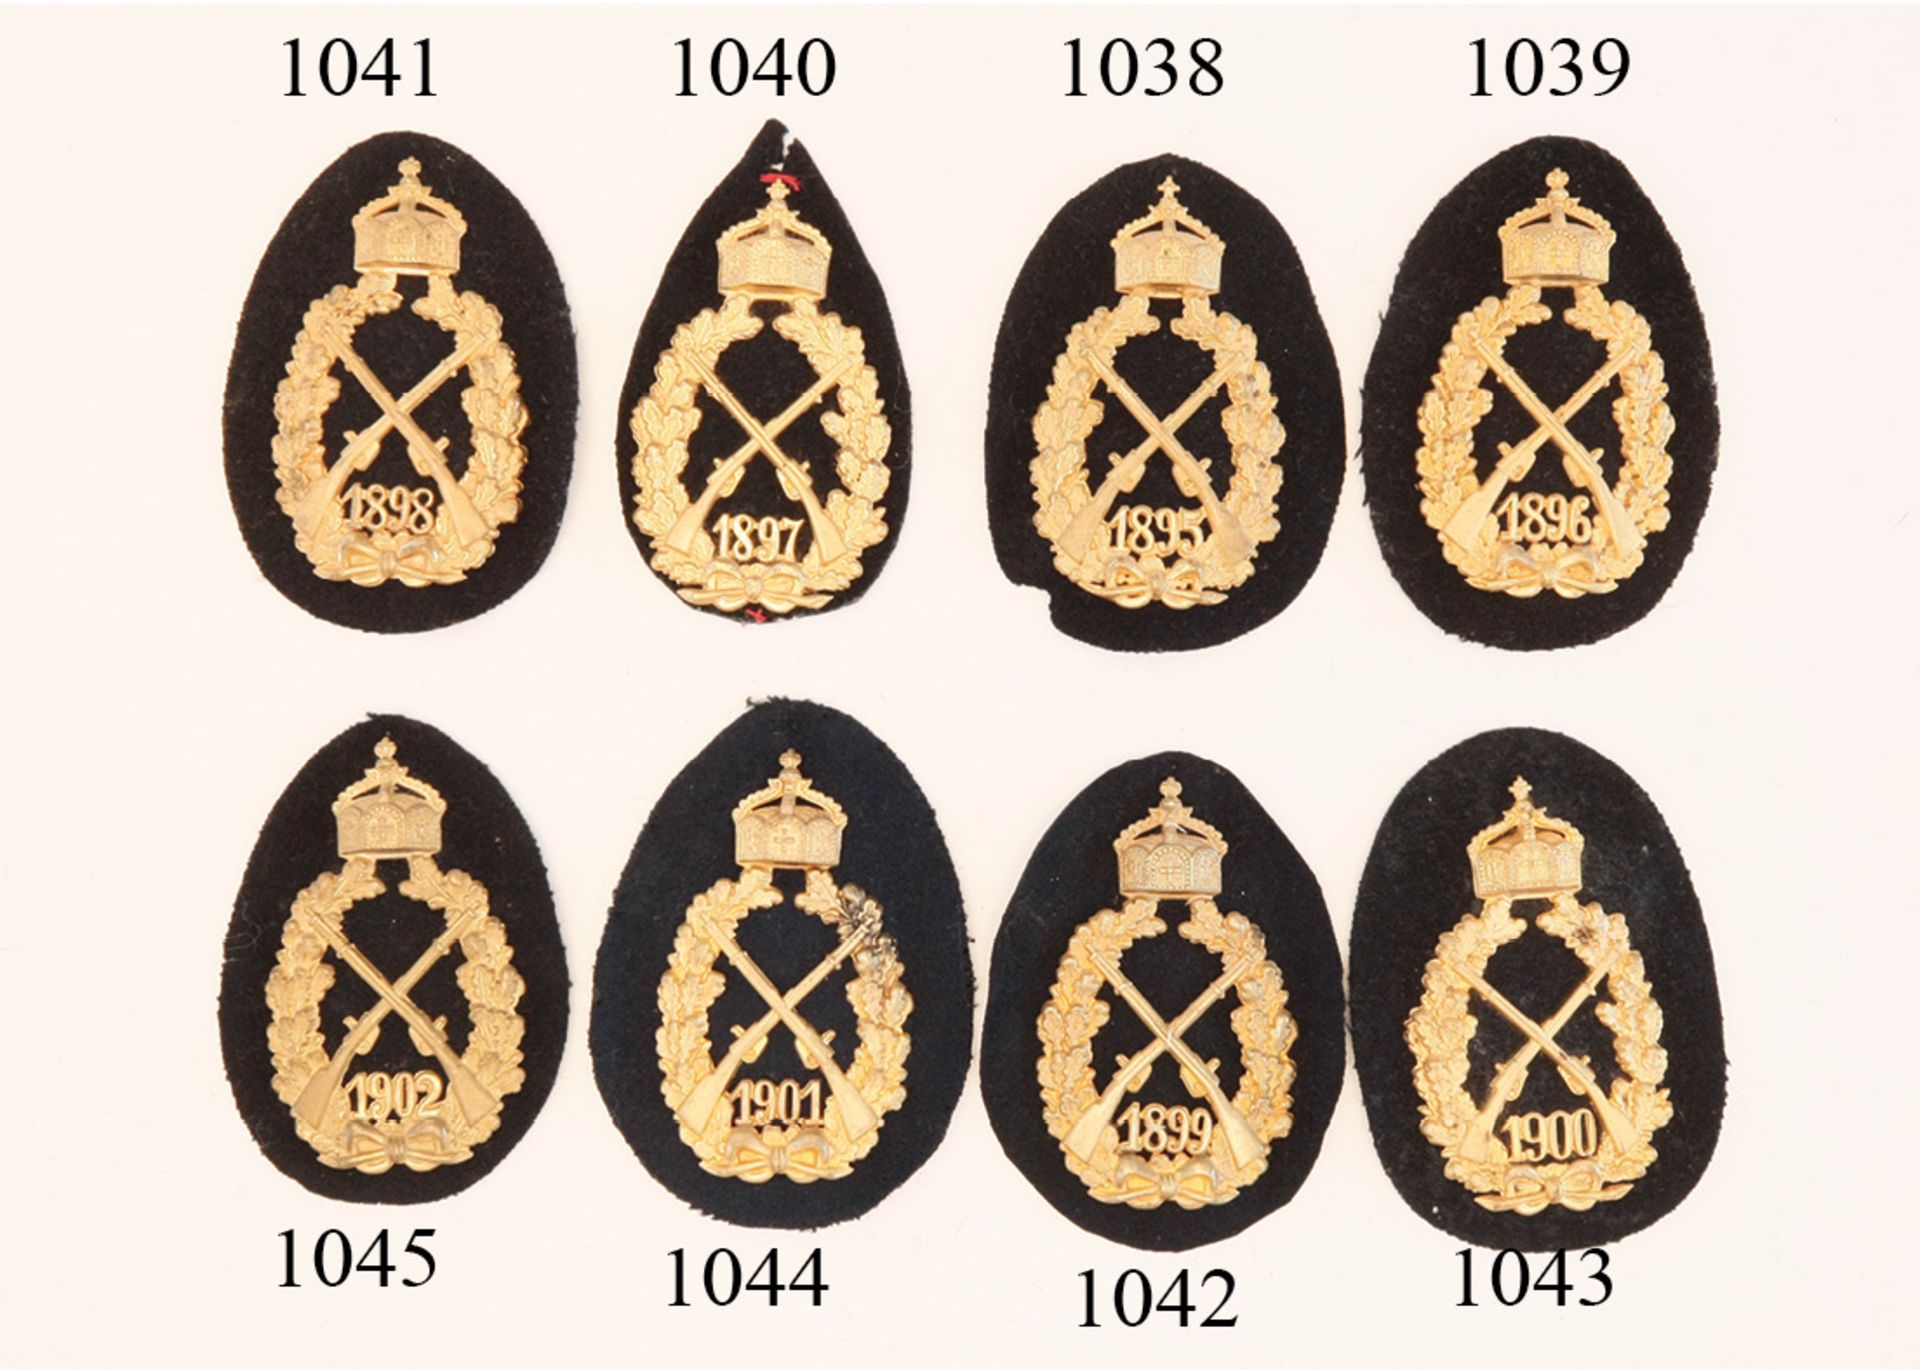 Kaiserschiesspreis, Infanterie, 1896